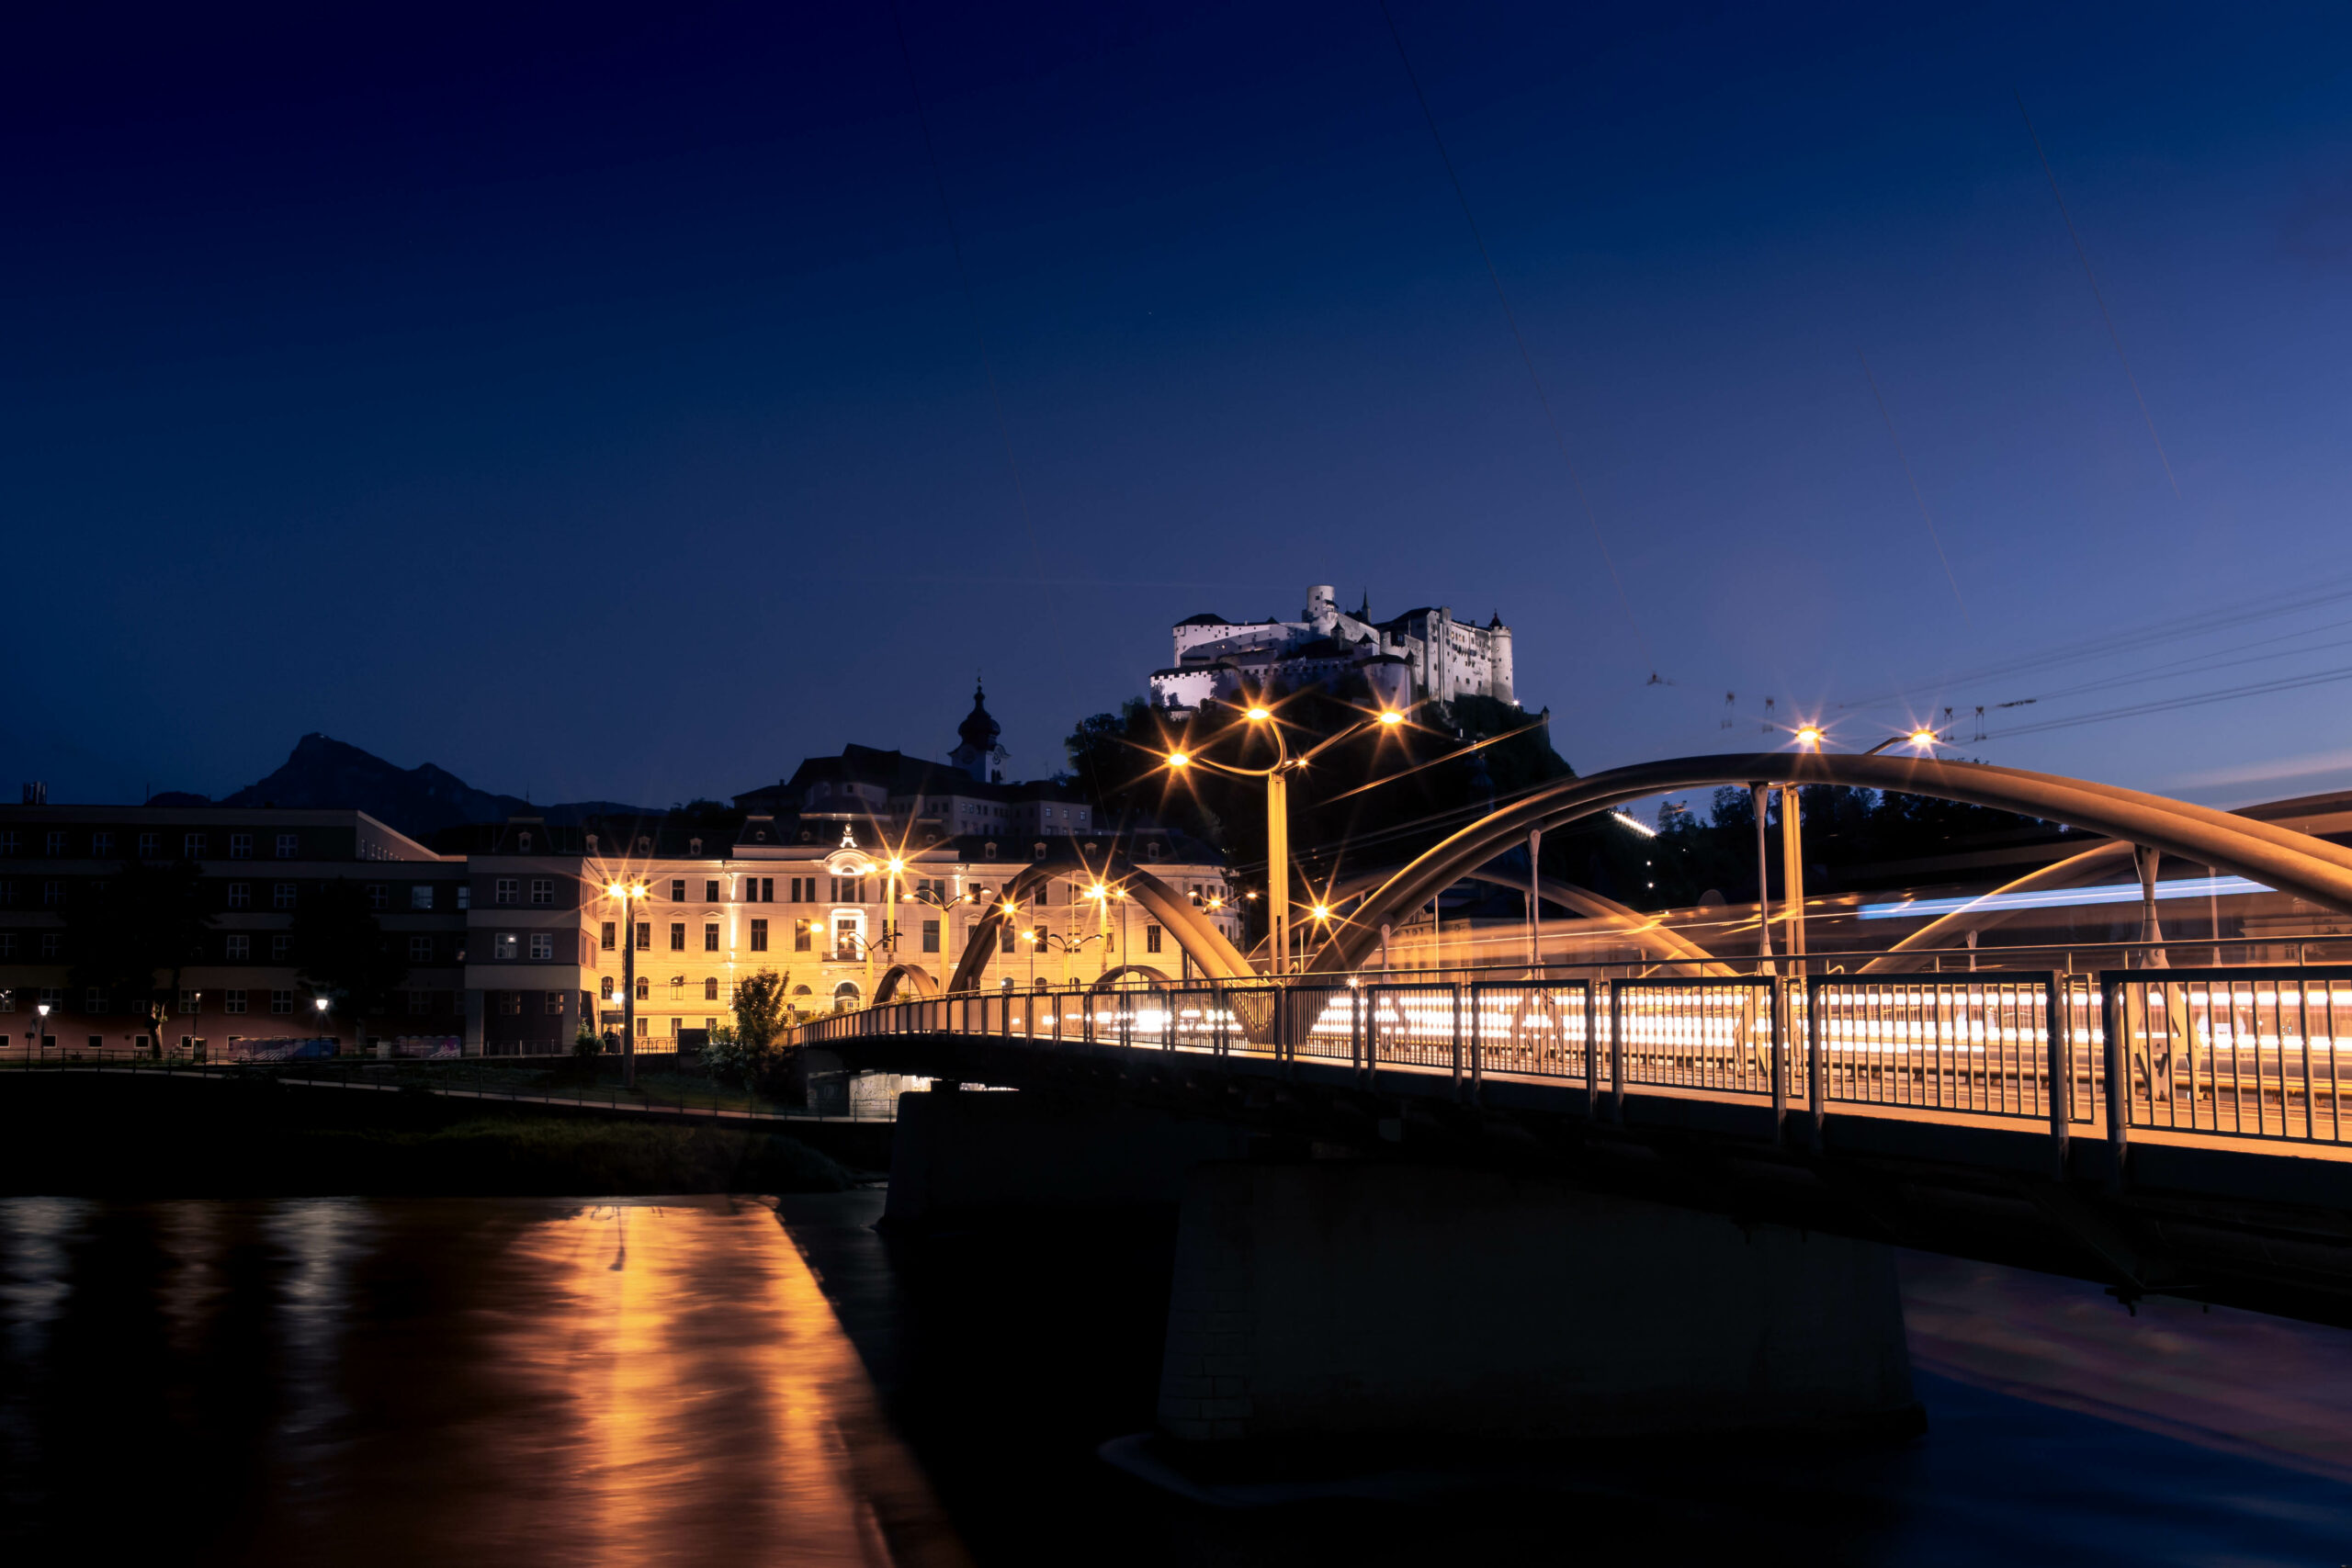 Nacht erwacht in Salzburg